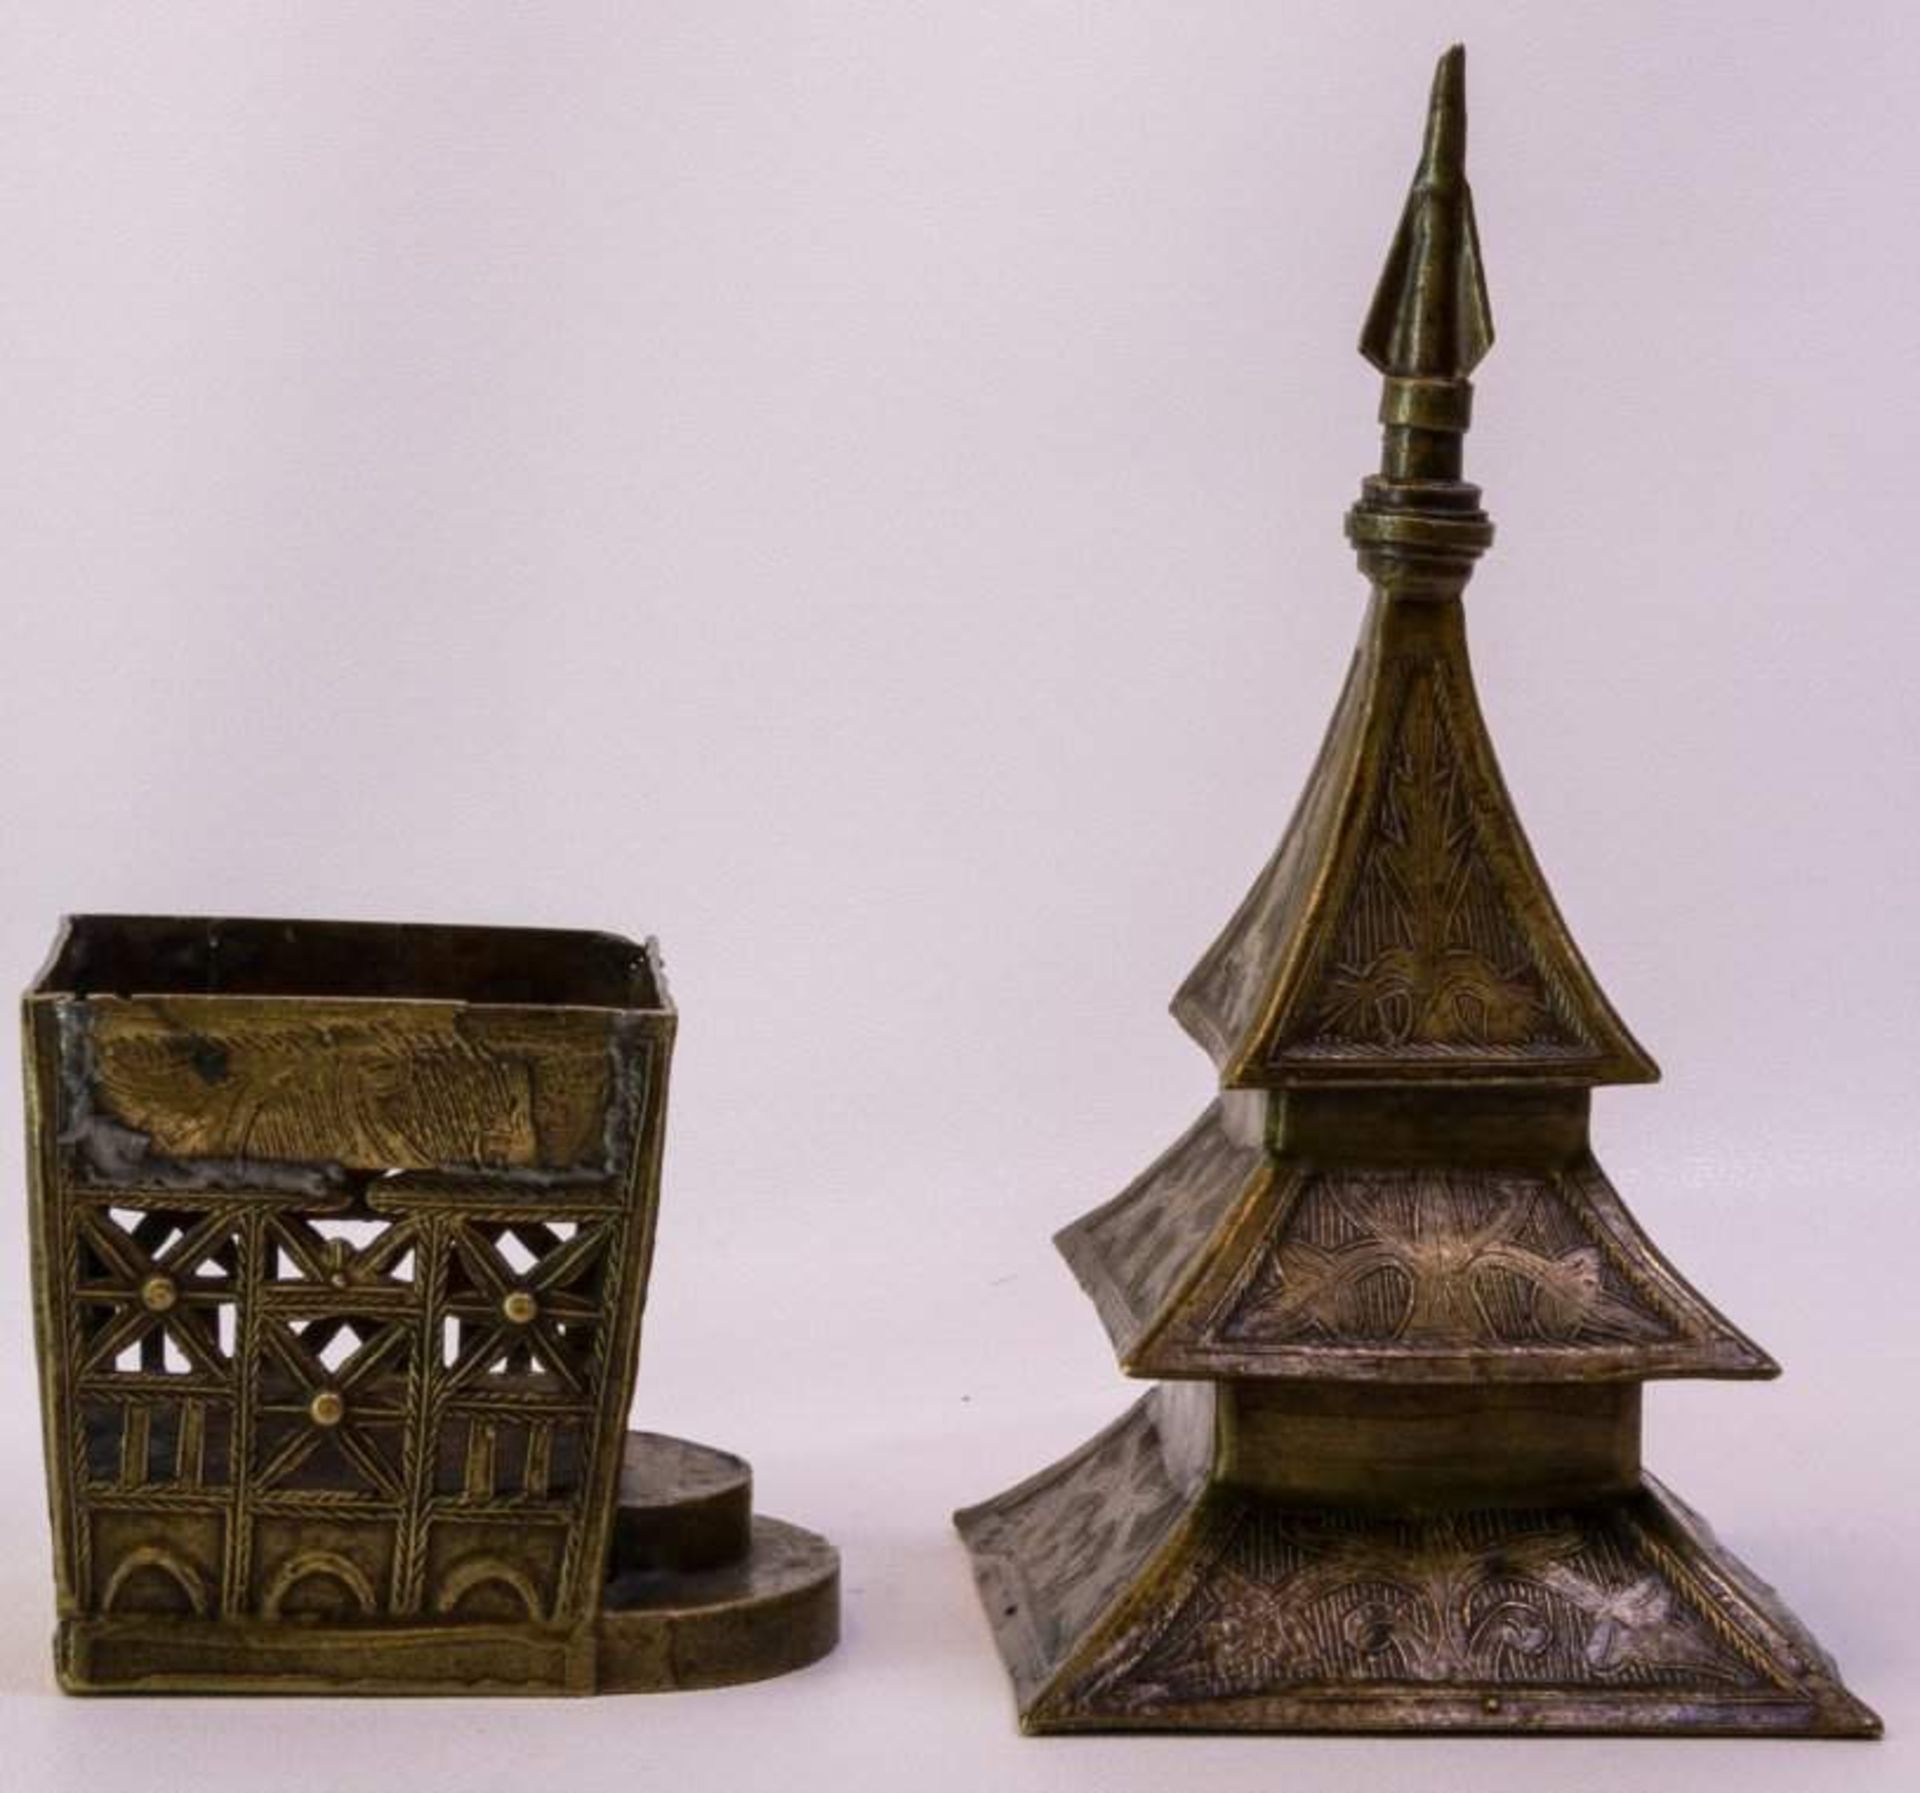 Weihrauchbehälter aus Bronze 19. Jh.In Form einer Pagode, durchbrochen gearbeitet,Ornamentdekor, - Bild 3 aus 4